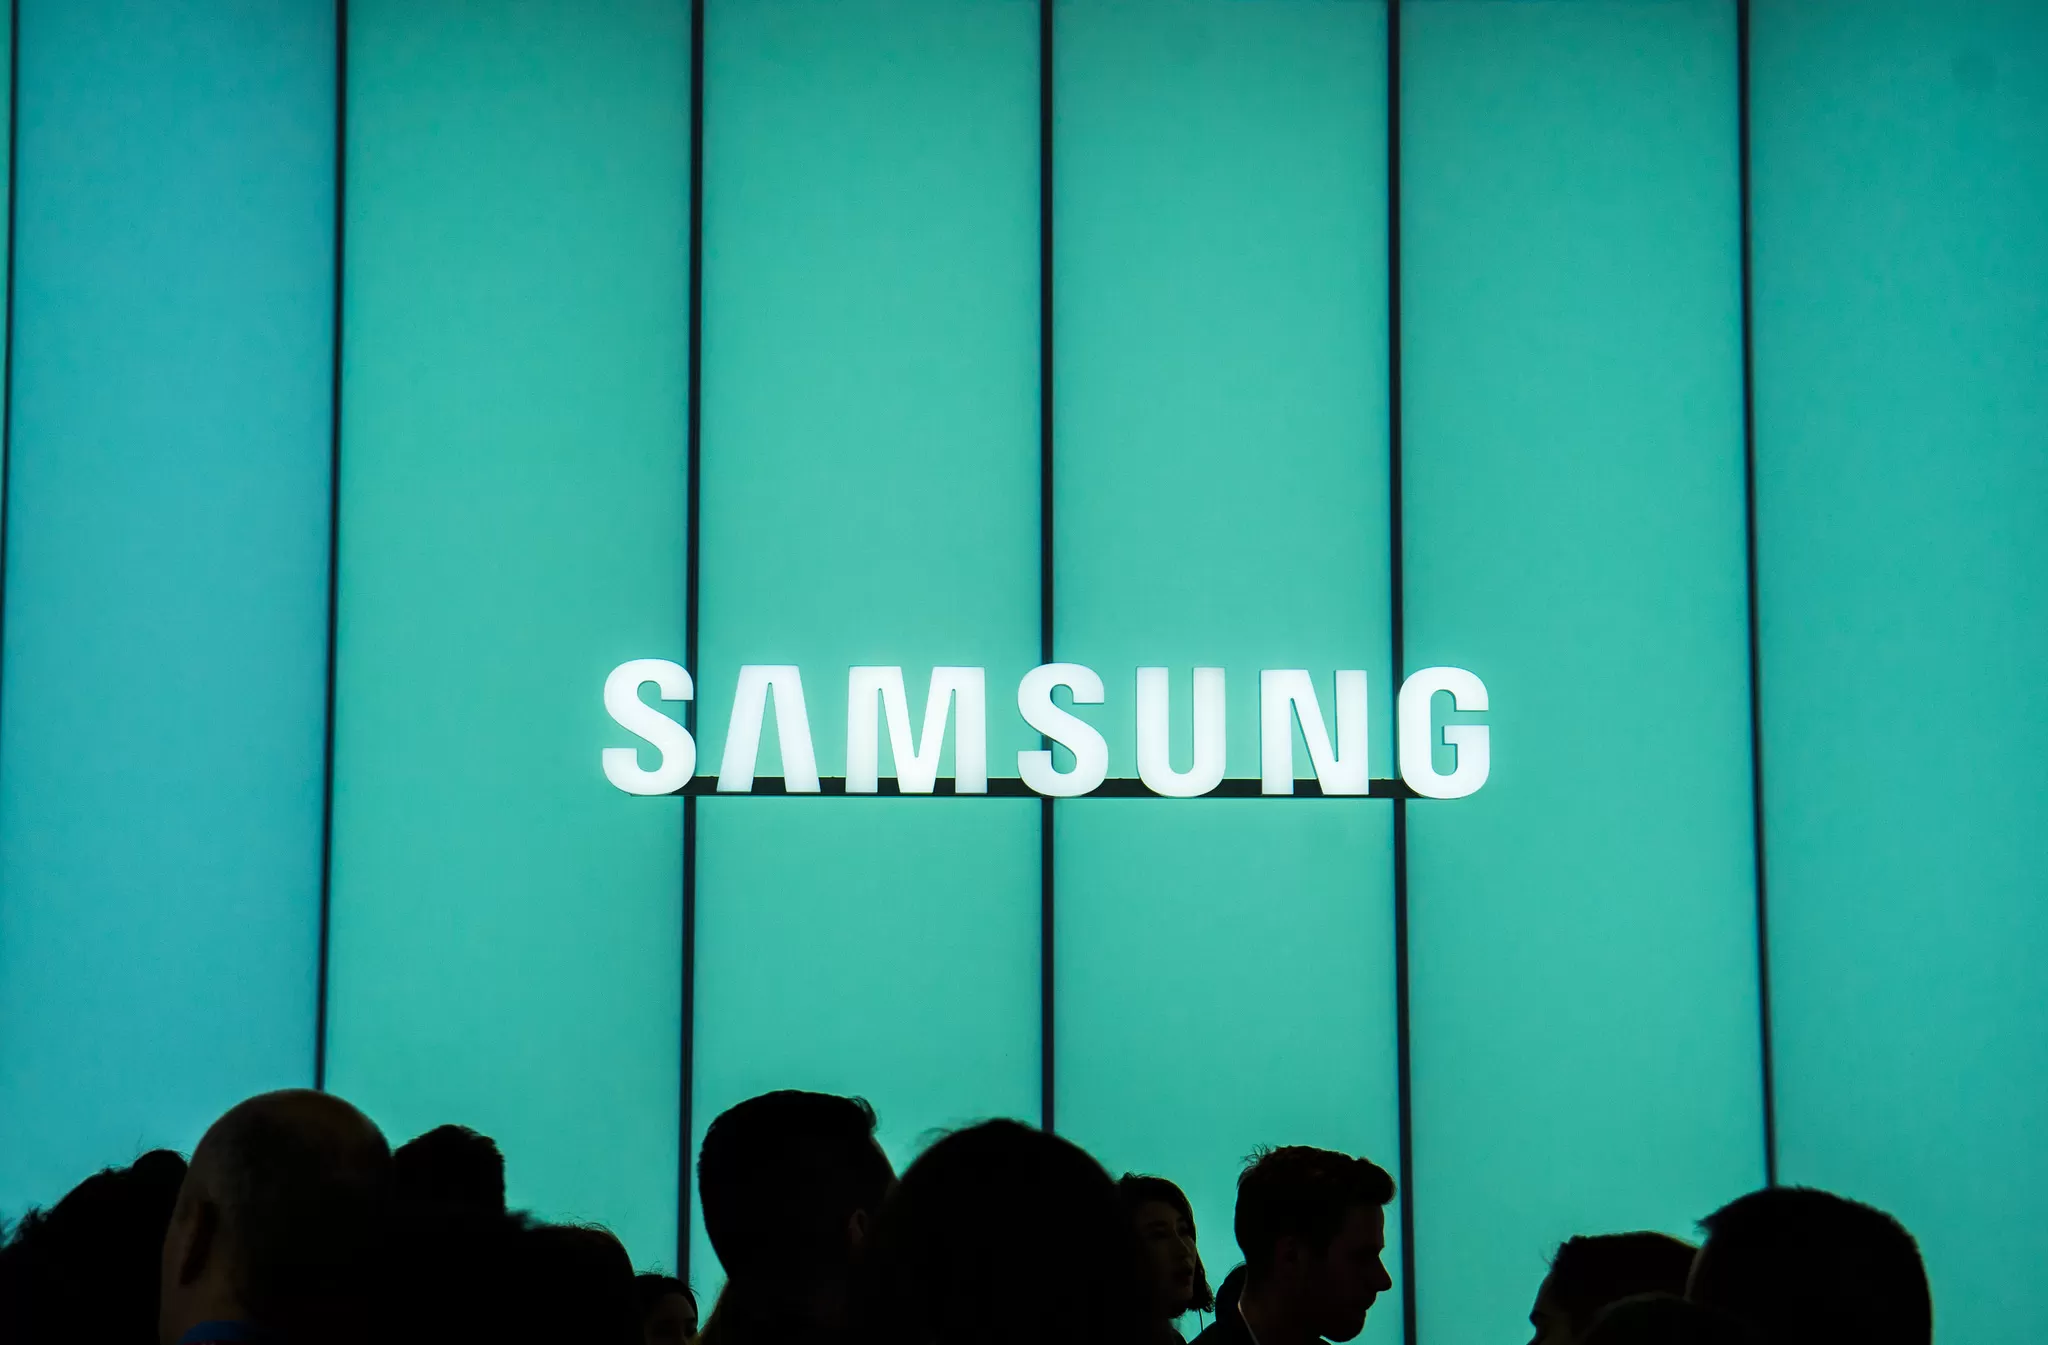 Samsung Galaxy Note 6 anteprima, data di uscita forse in Agosto